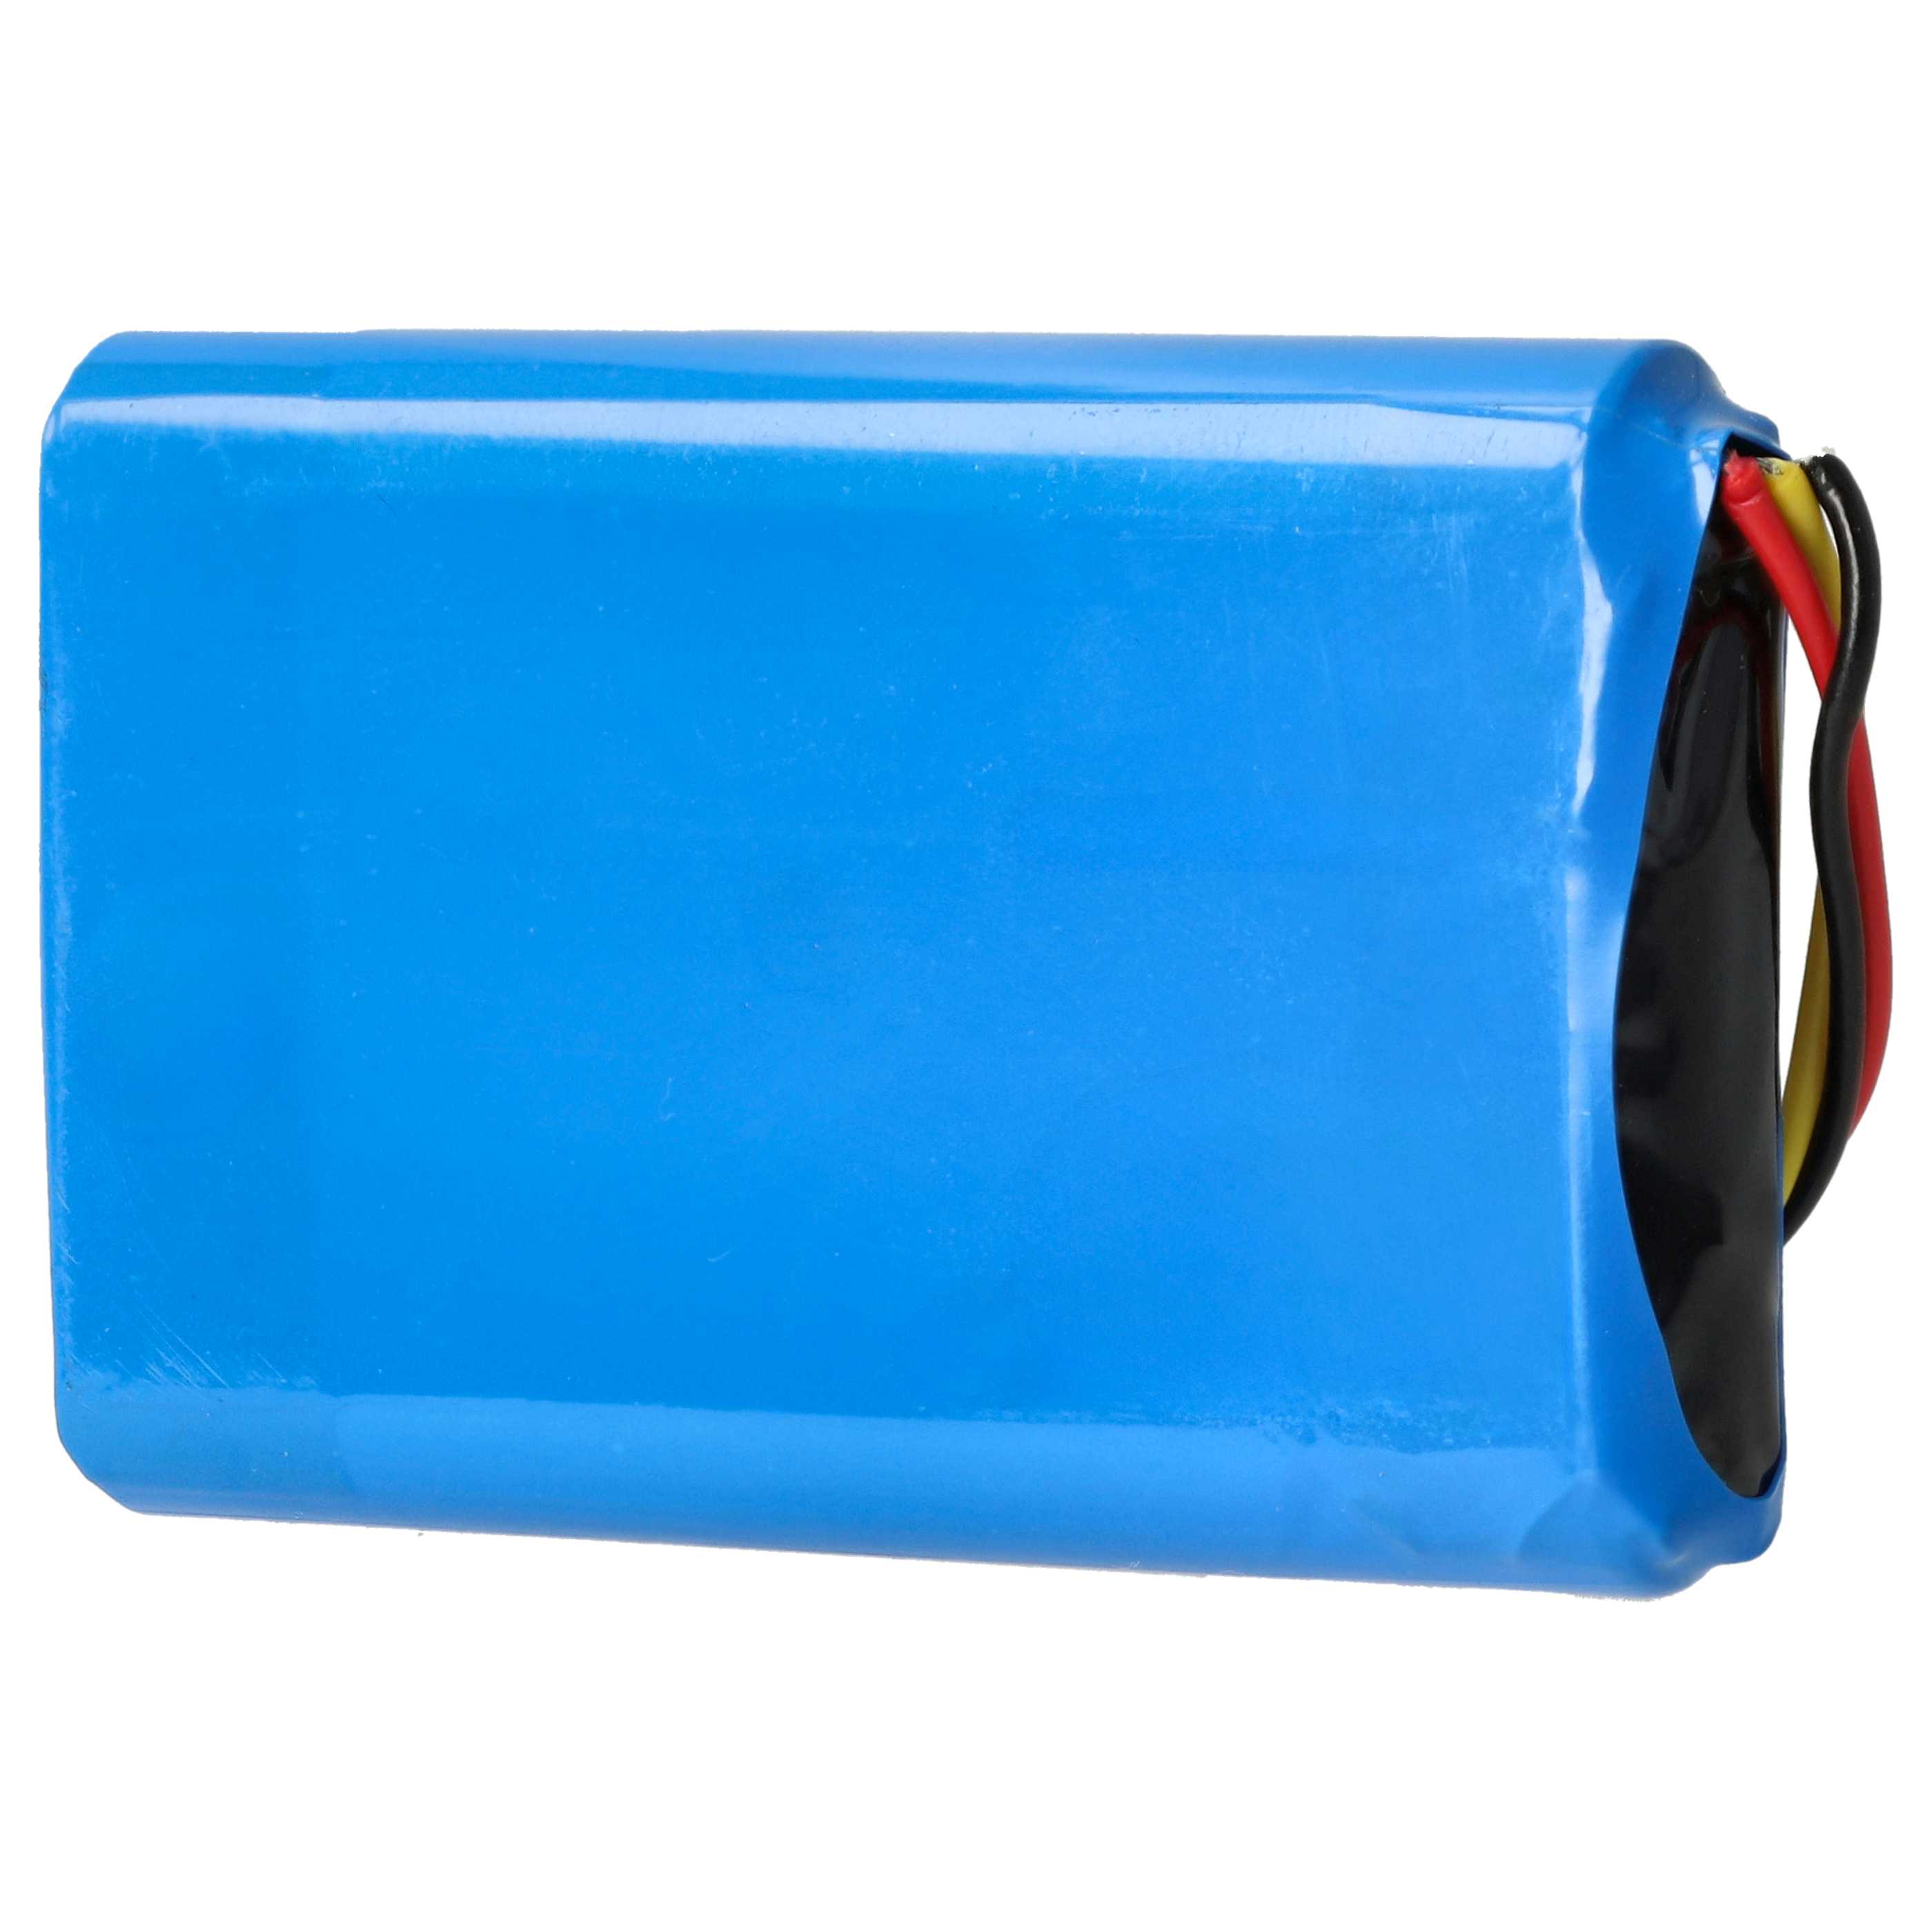 Batterie remplace Logitech 190247-1000, L-LB2 pour souris sans-fil - 2000mAh 3,7V Li-ion